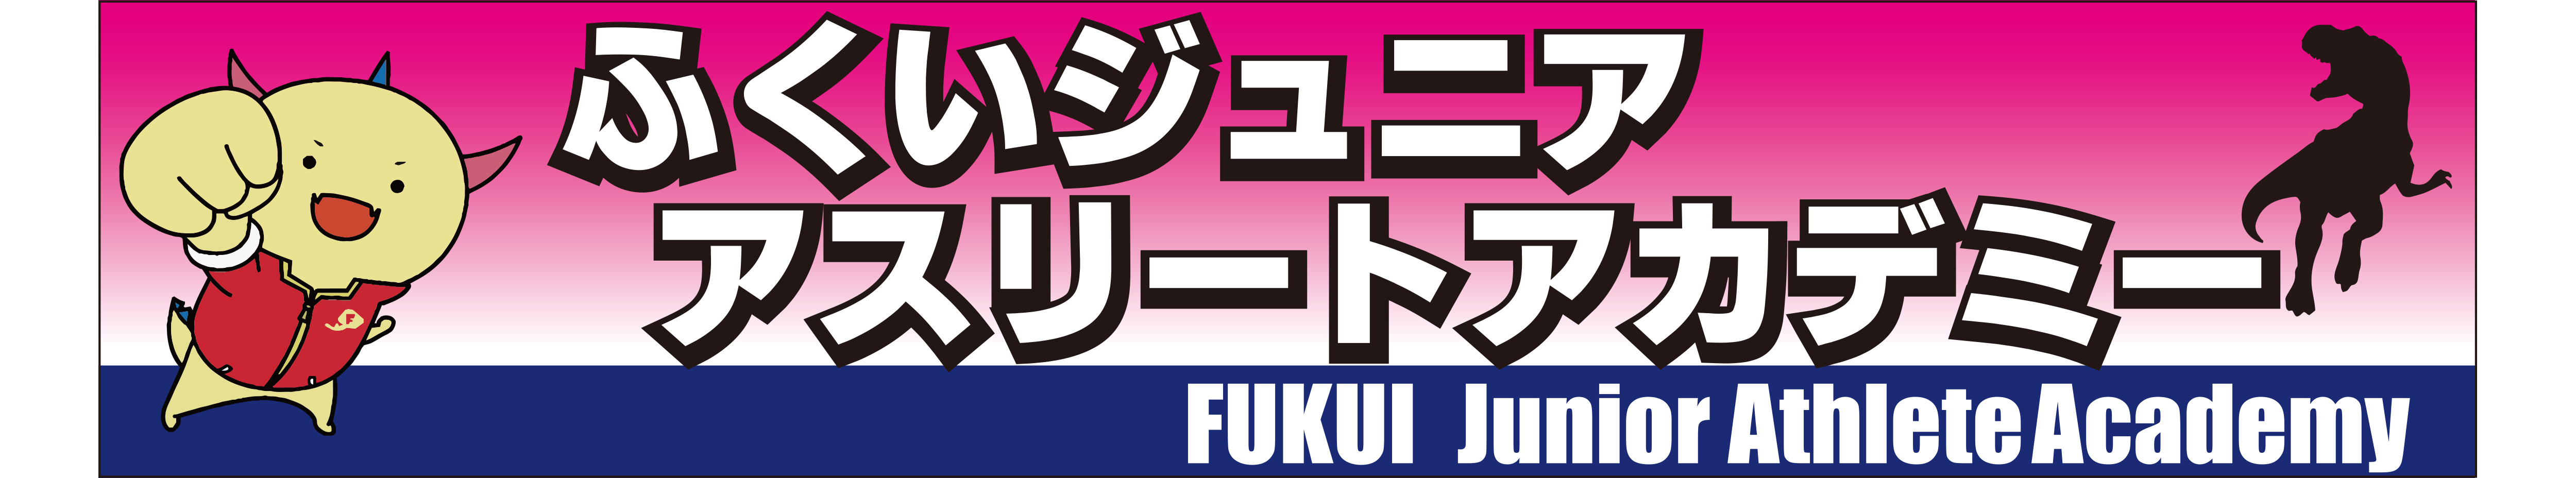 01FUKUI Junior Athlete Academy